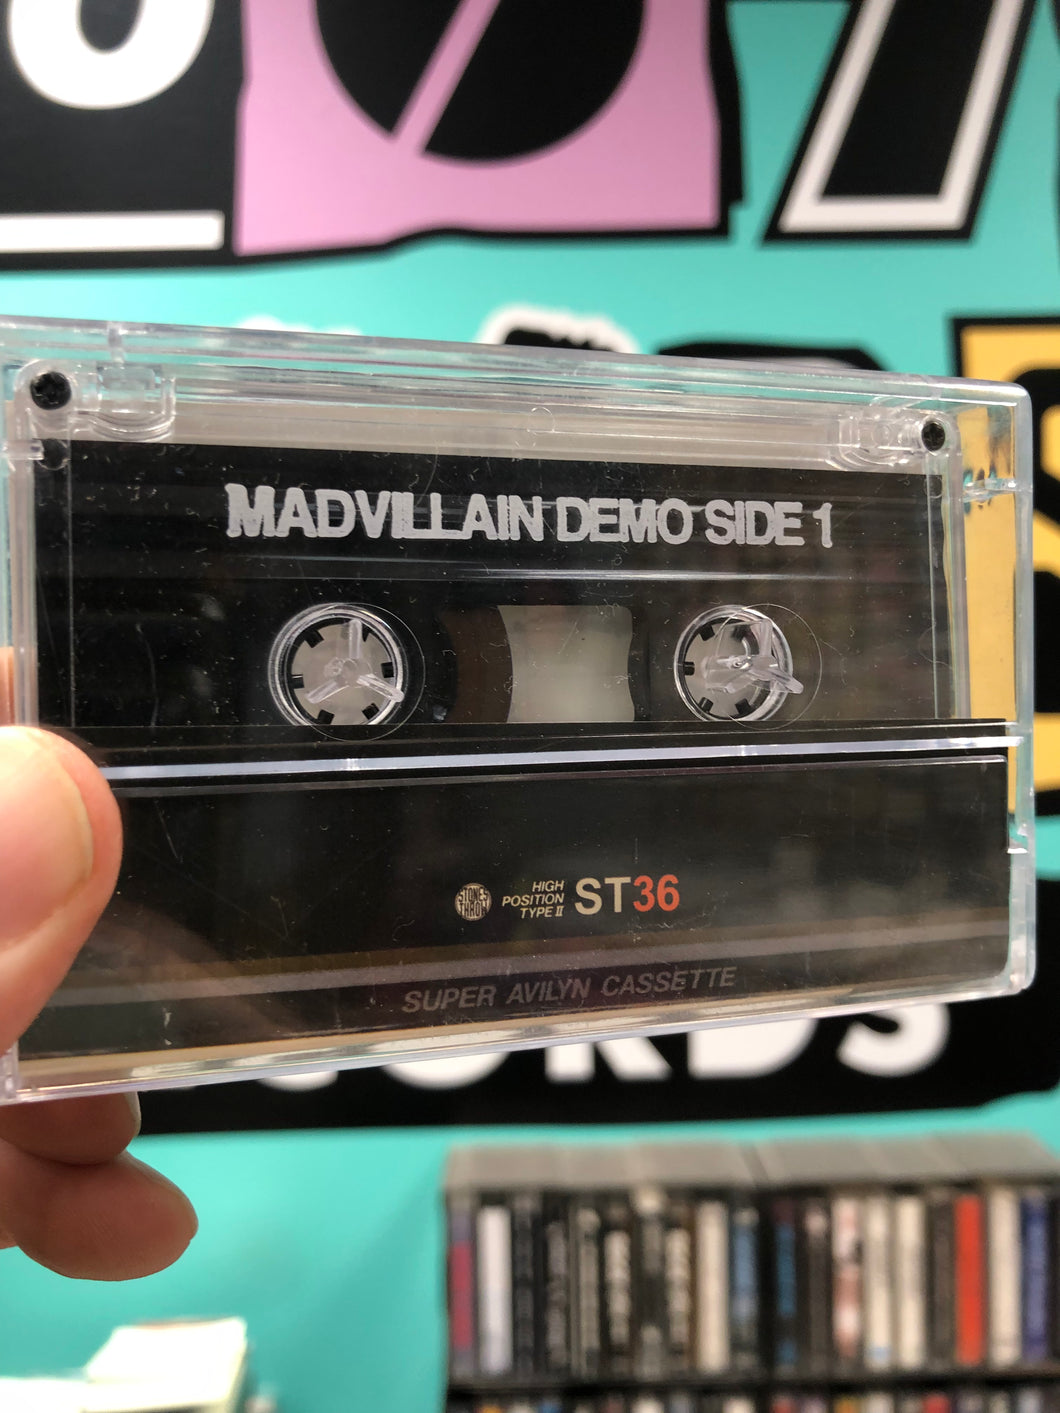 Madvillain: Madvillainy Demo Tape, OG, only tape pressing, US 2013